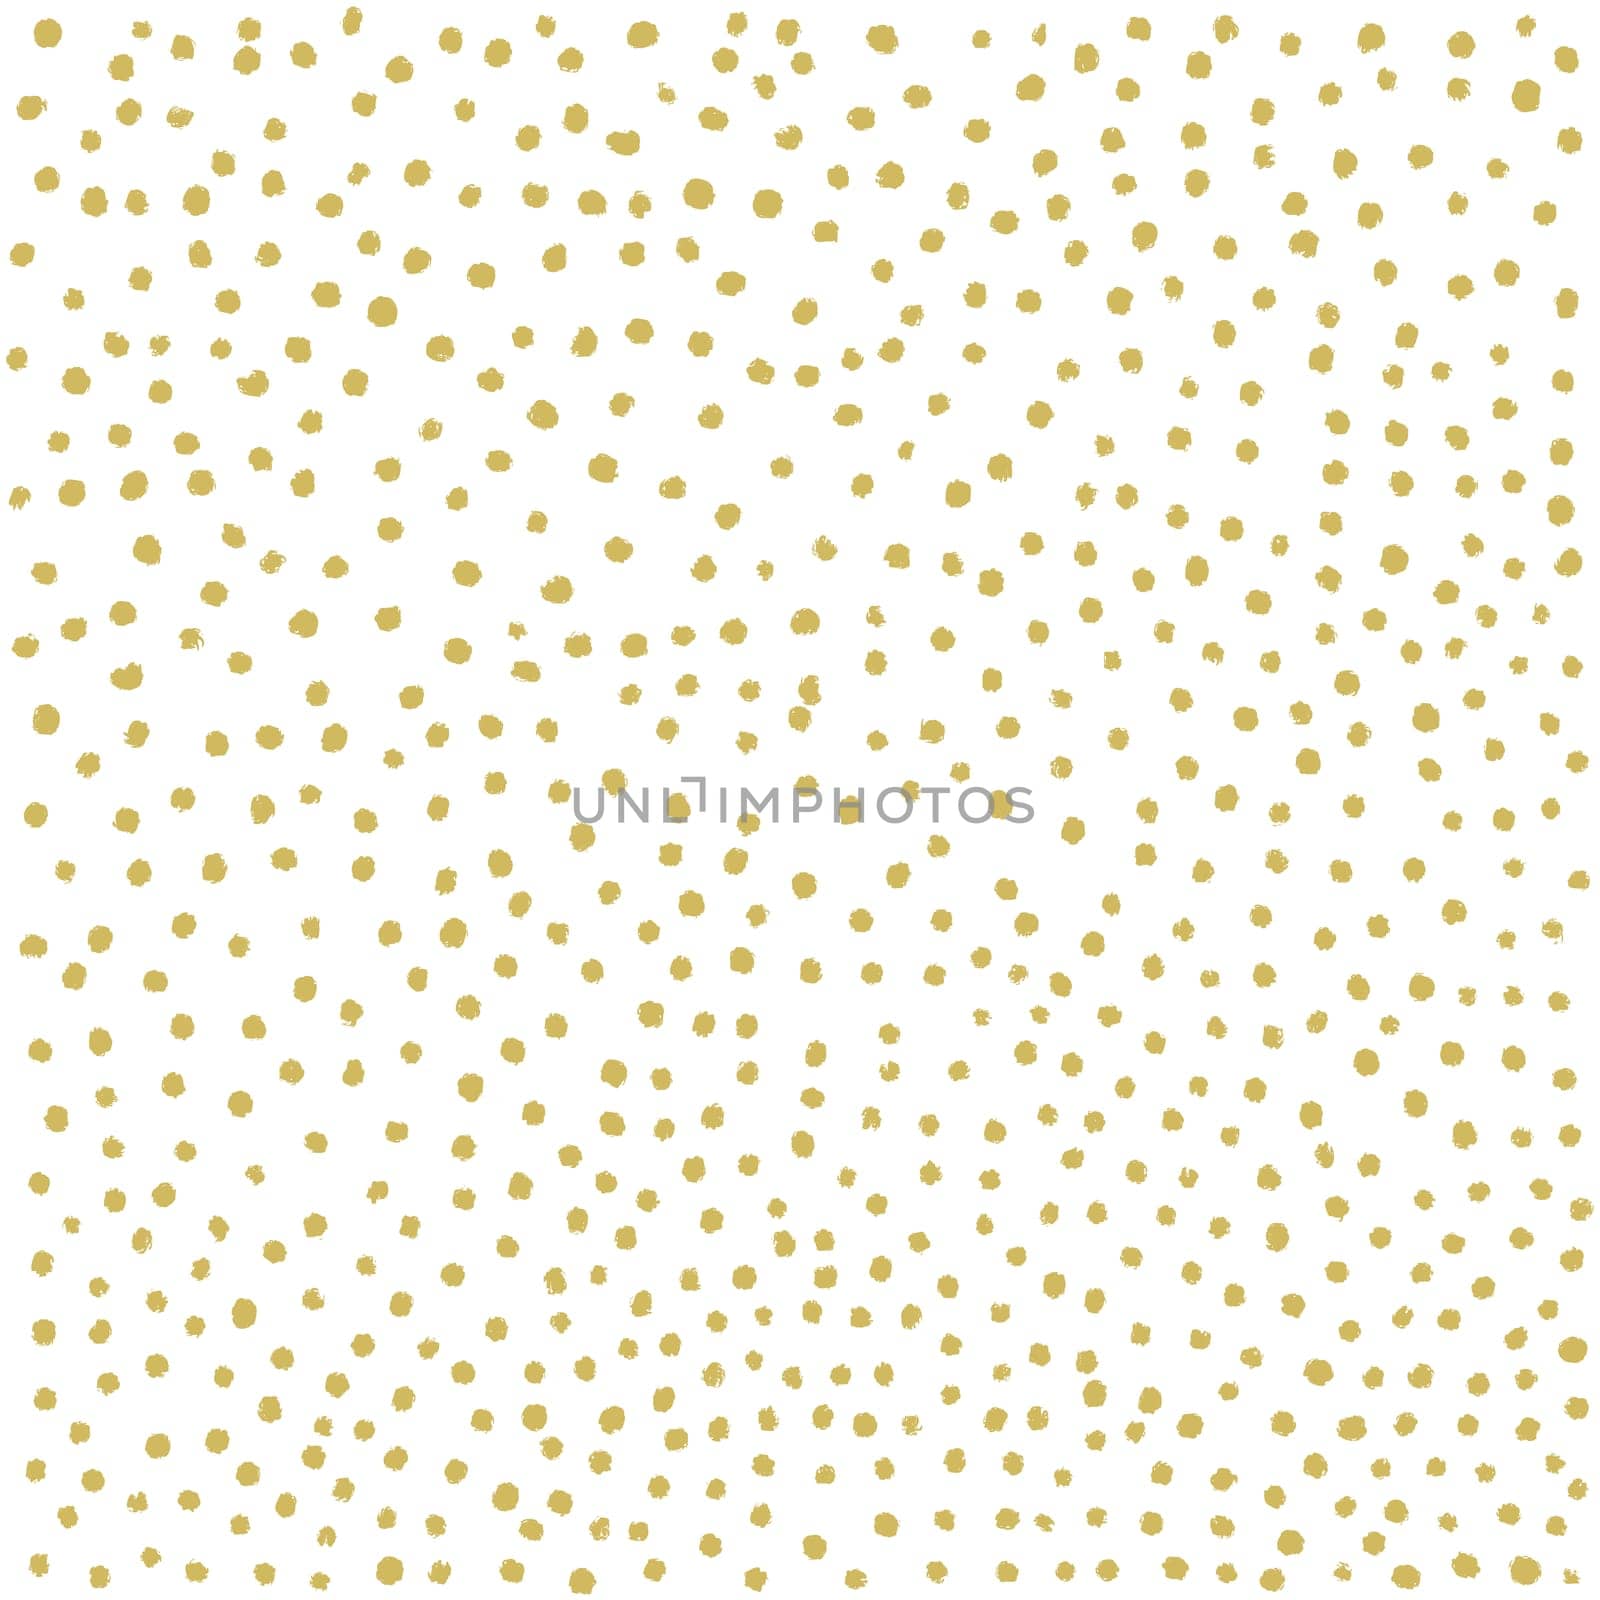 Hand drawn painted gold circles. Gold polka dot seamless pattern. Abstract illustration - vector